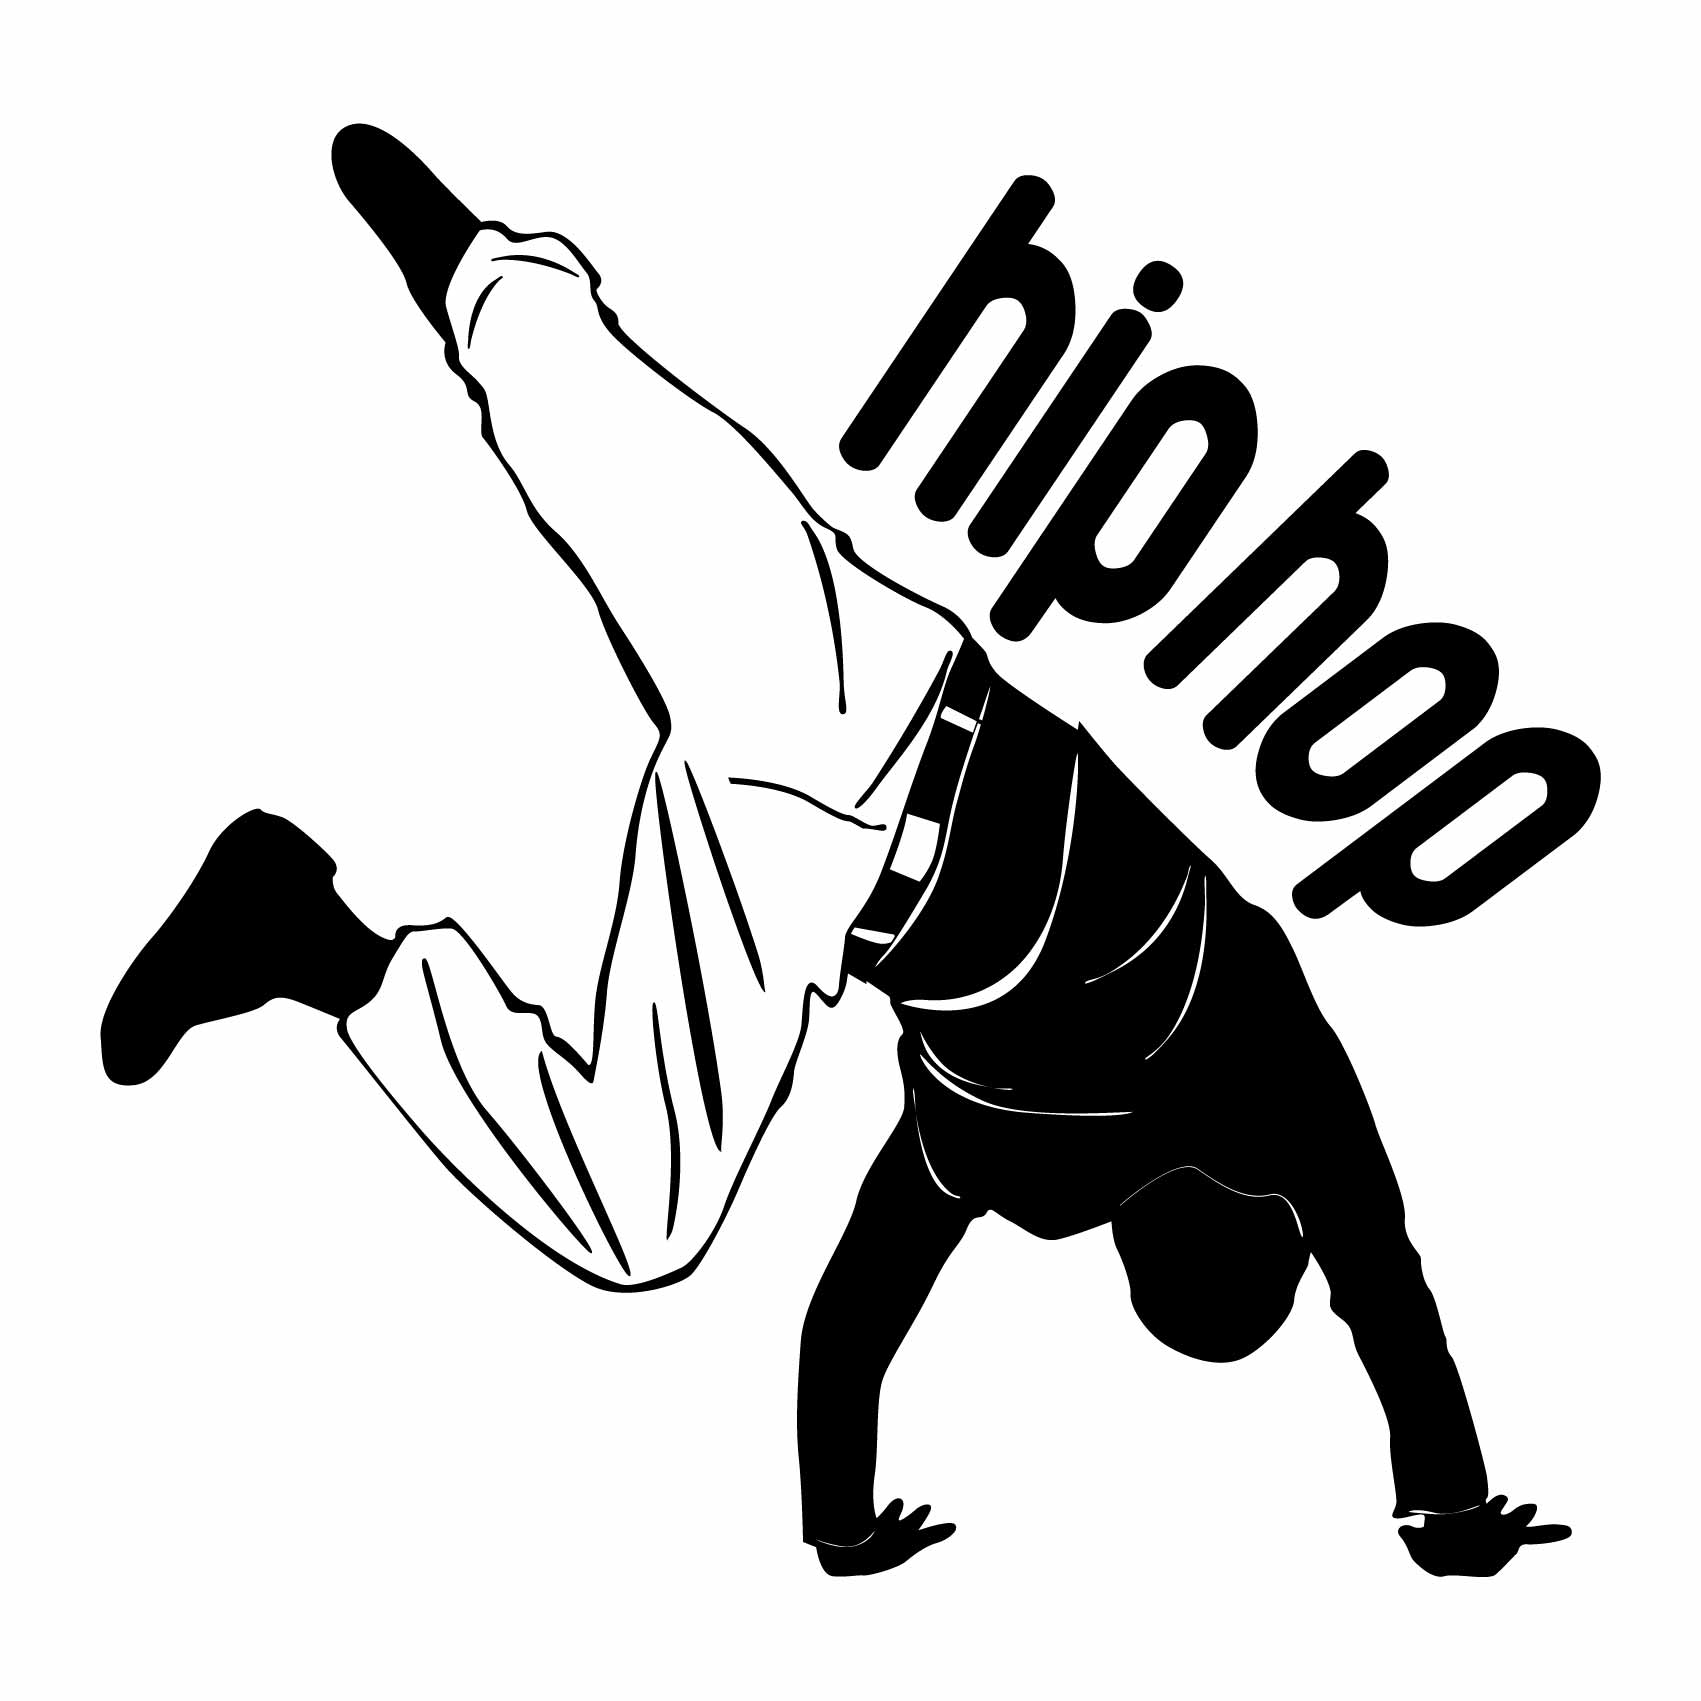 stickers-hip-hop-pour-chambre-ref53musique-autocollant-muraux-musique-sticker-mural-musical-note-notes-deco-salon-chambre-adulte-ado-enfant-(2)